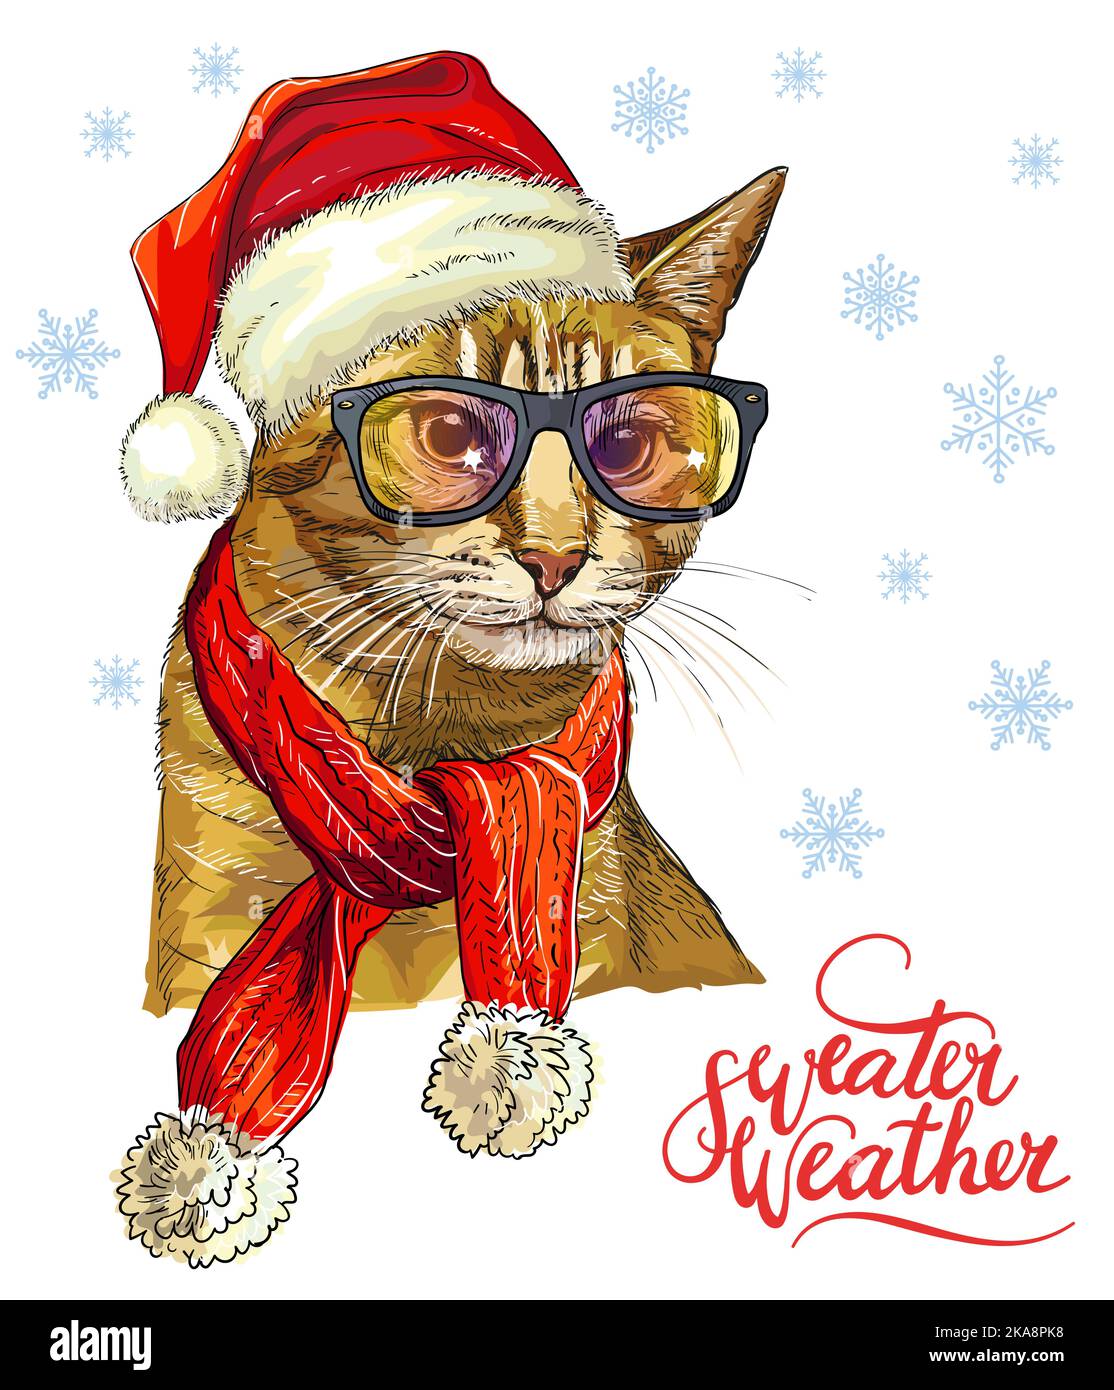 Weihnachtskarte mit lustigen niedlichen wichtigen Katze in weihnachtshut, Brille. Winterhintergrund mit Schneeflocken. Schriftzug Pullover Wetter. Vektorgrafik Stock Vektor